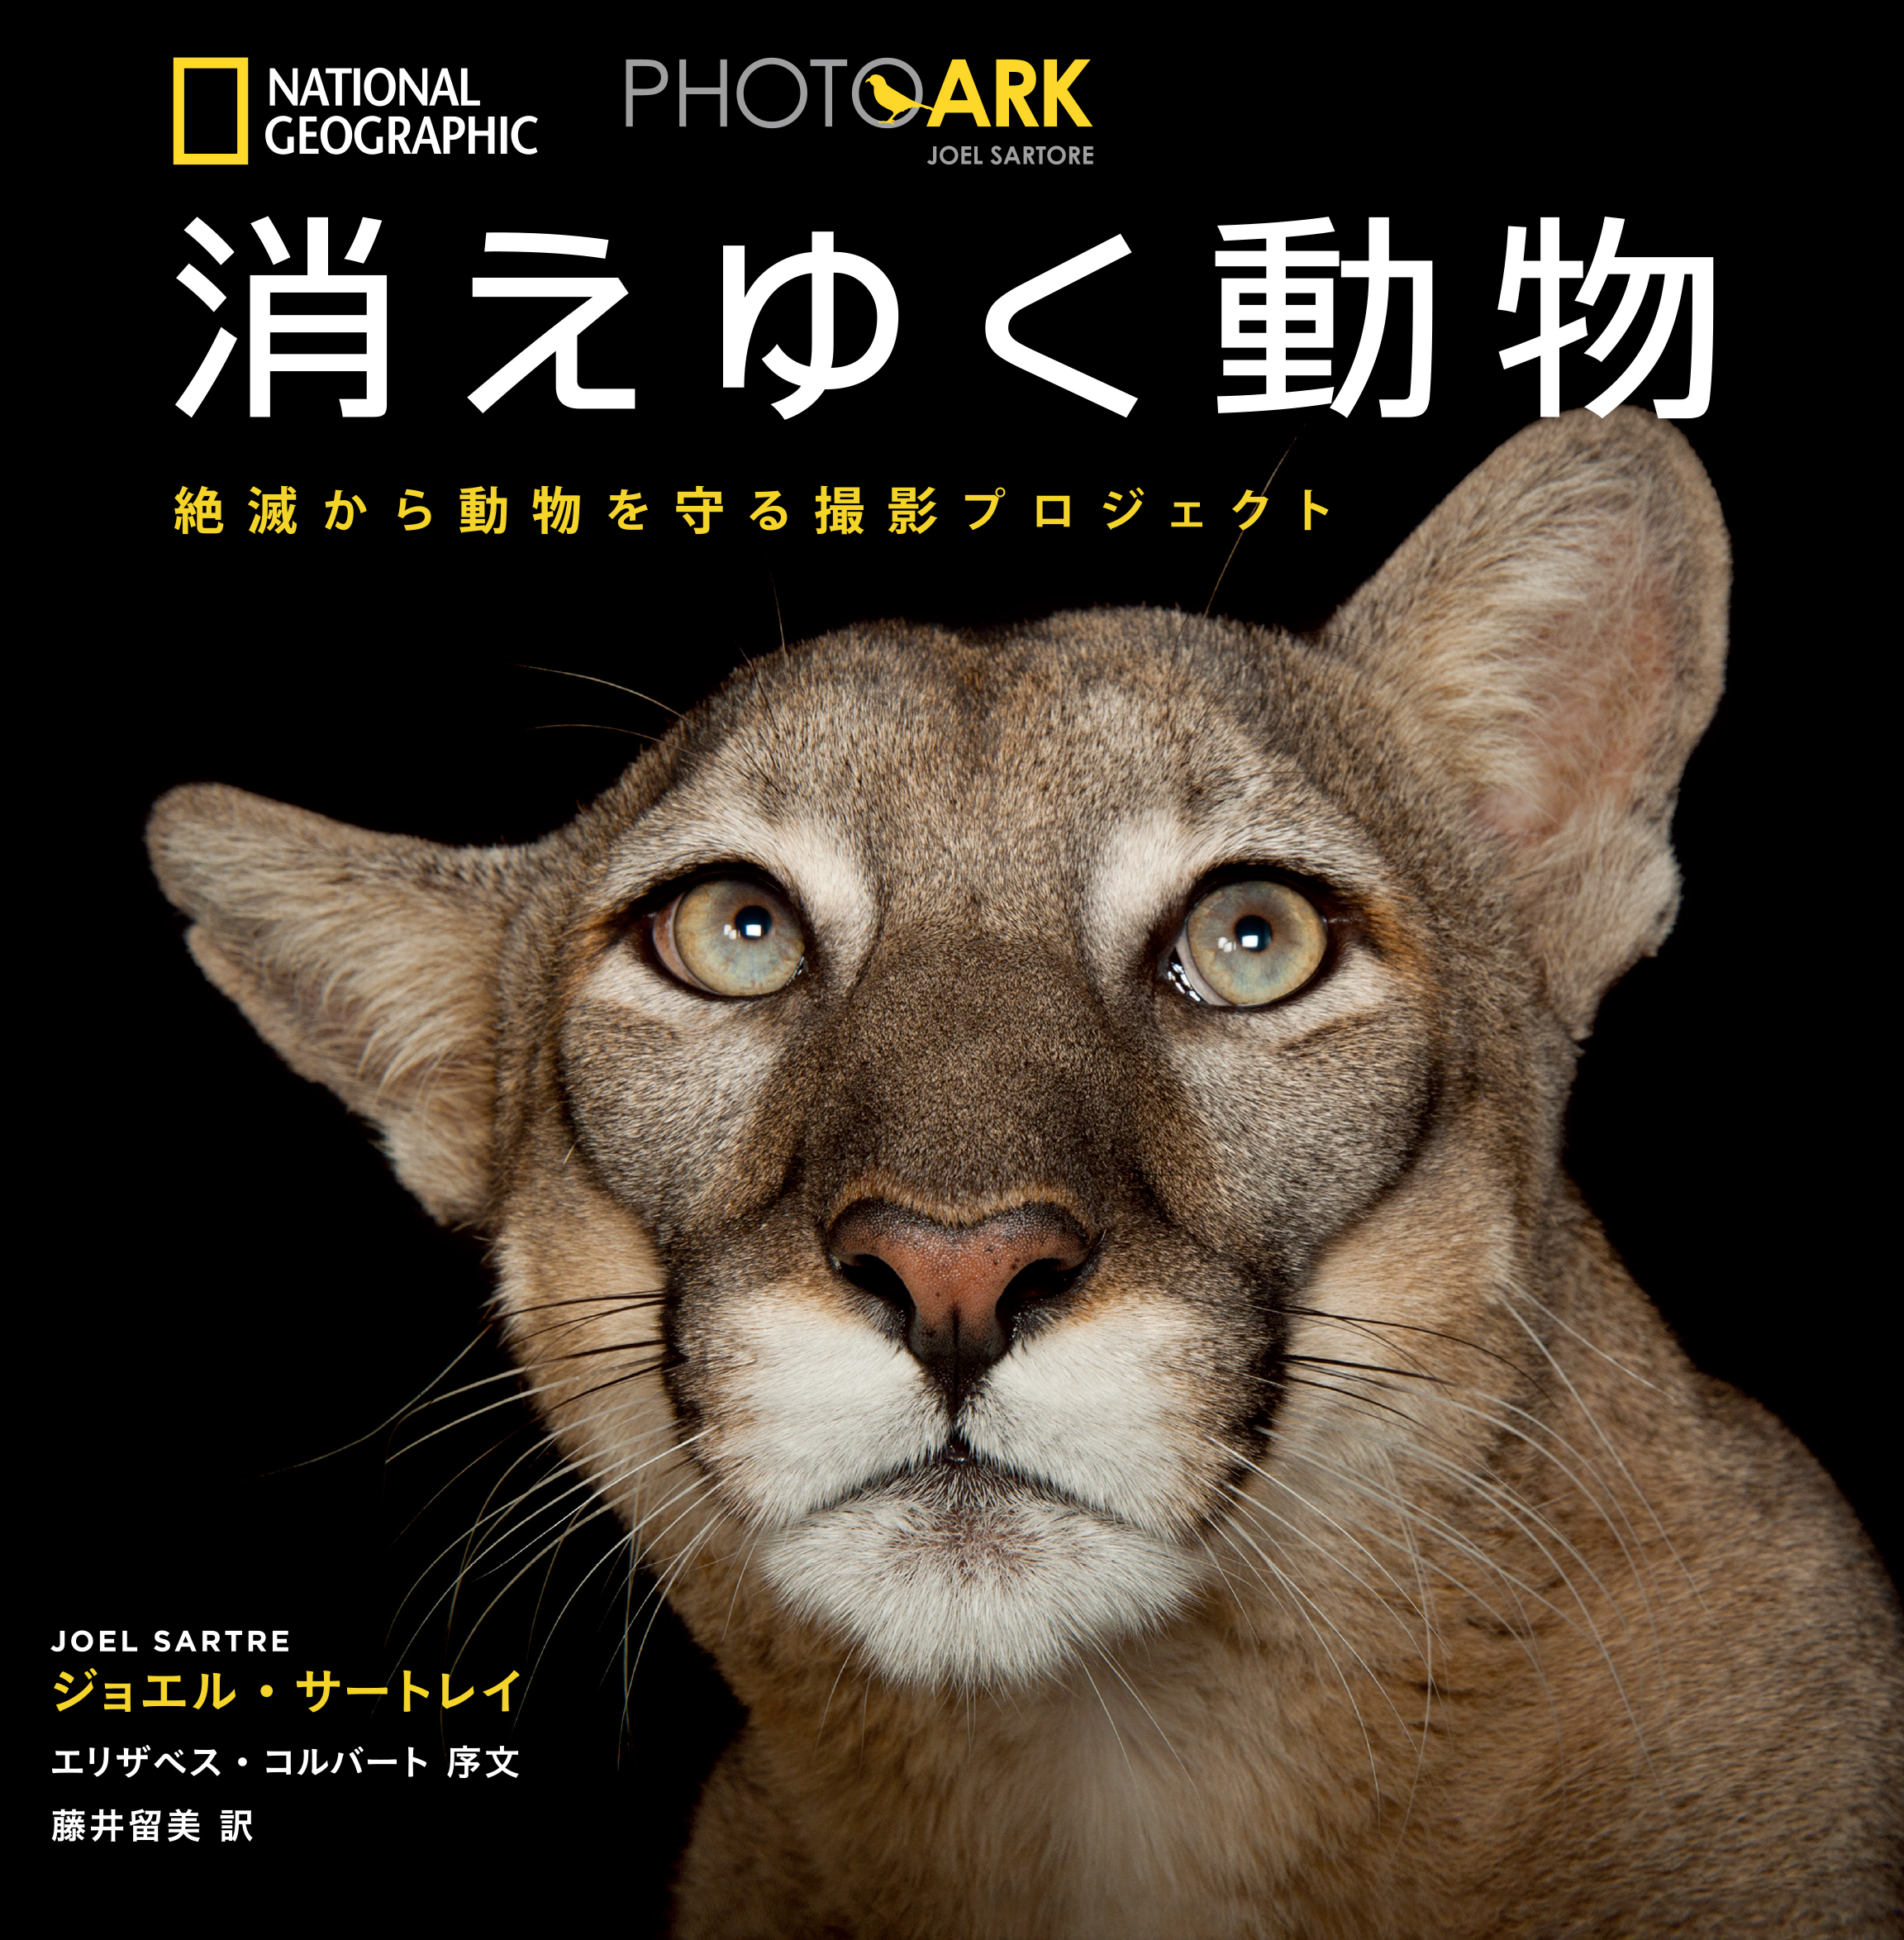 写真集 Photo Ark 消えゆく動物絶滅から動物を守る撮影プロジェクト 発売中 日経ナショナル ジオグラフィック社のプレスリリース